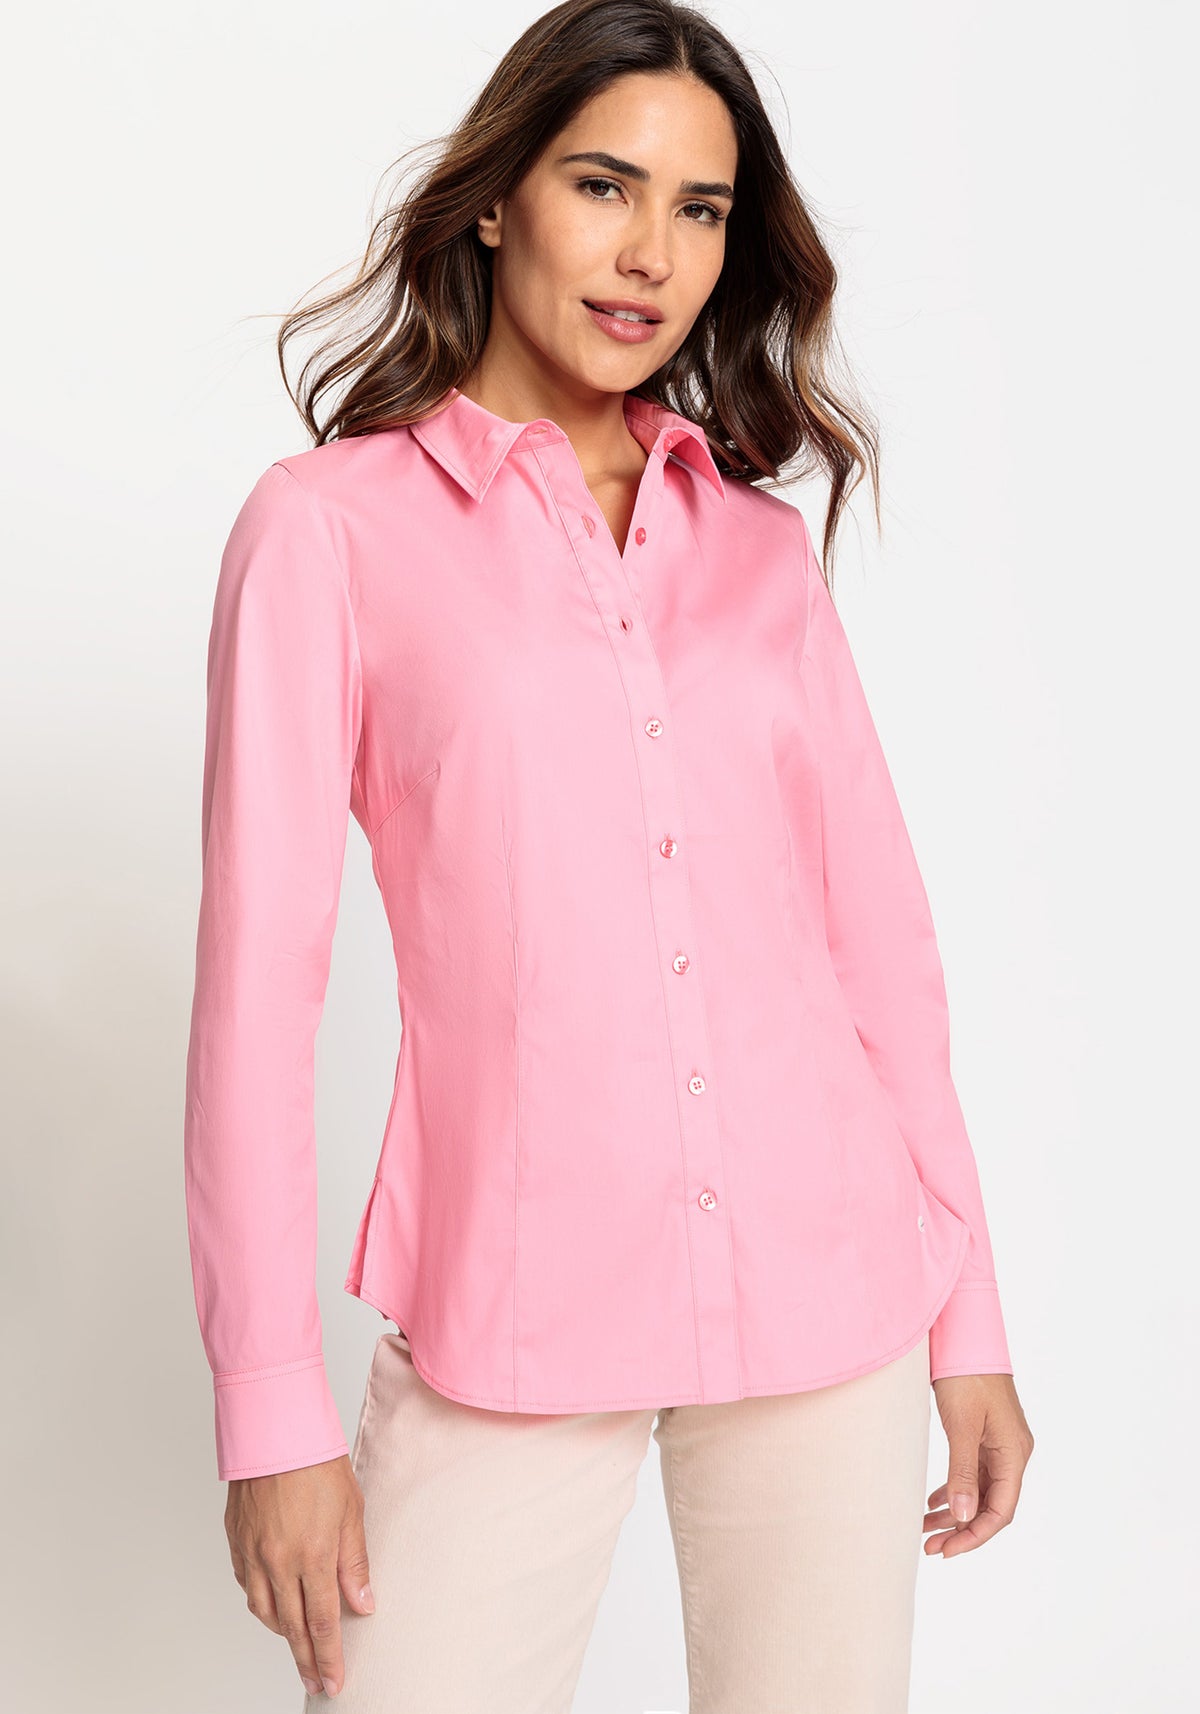 Cotton Blend Long Sleeve Poplin Shirt